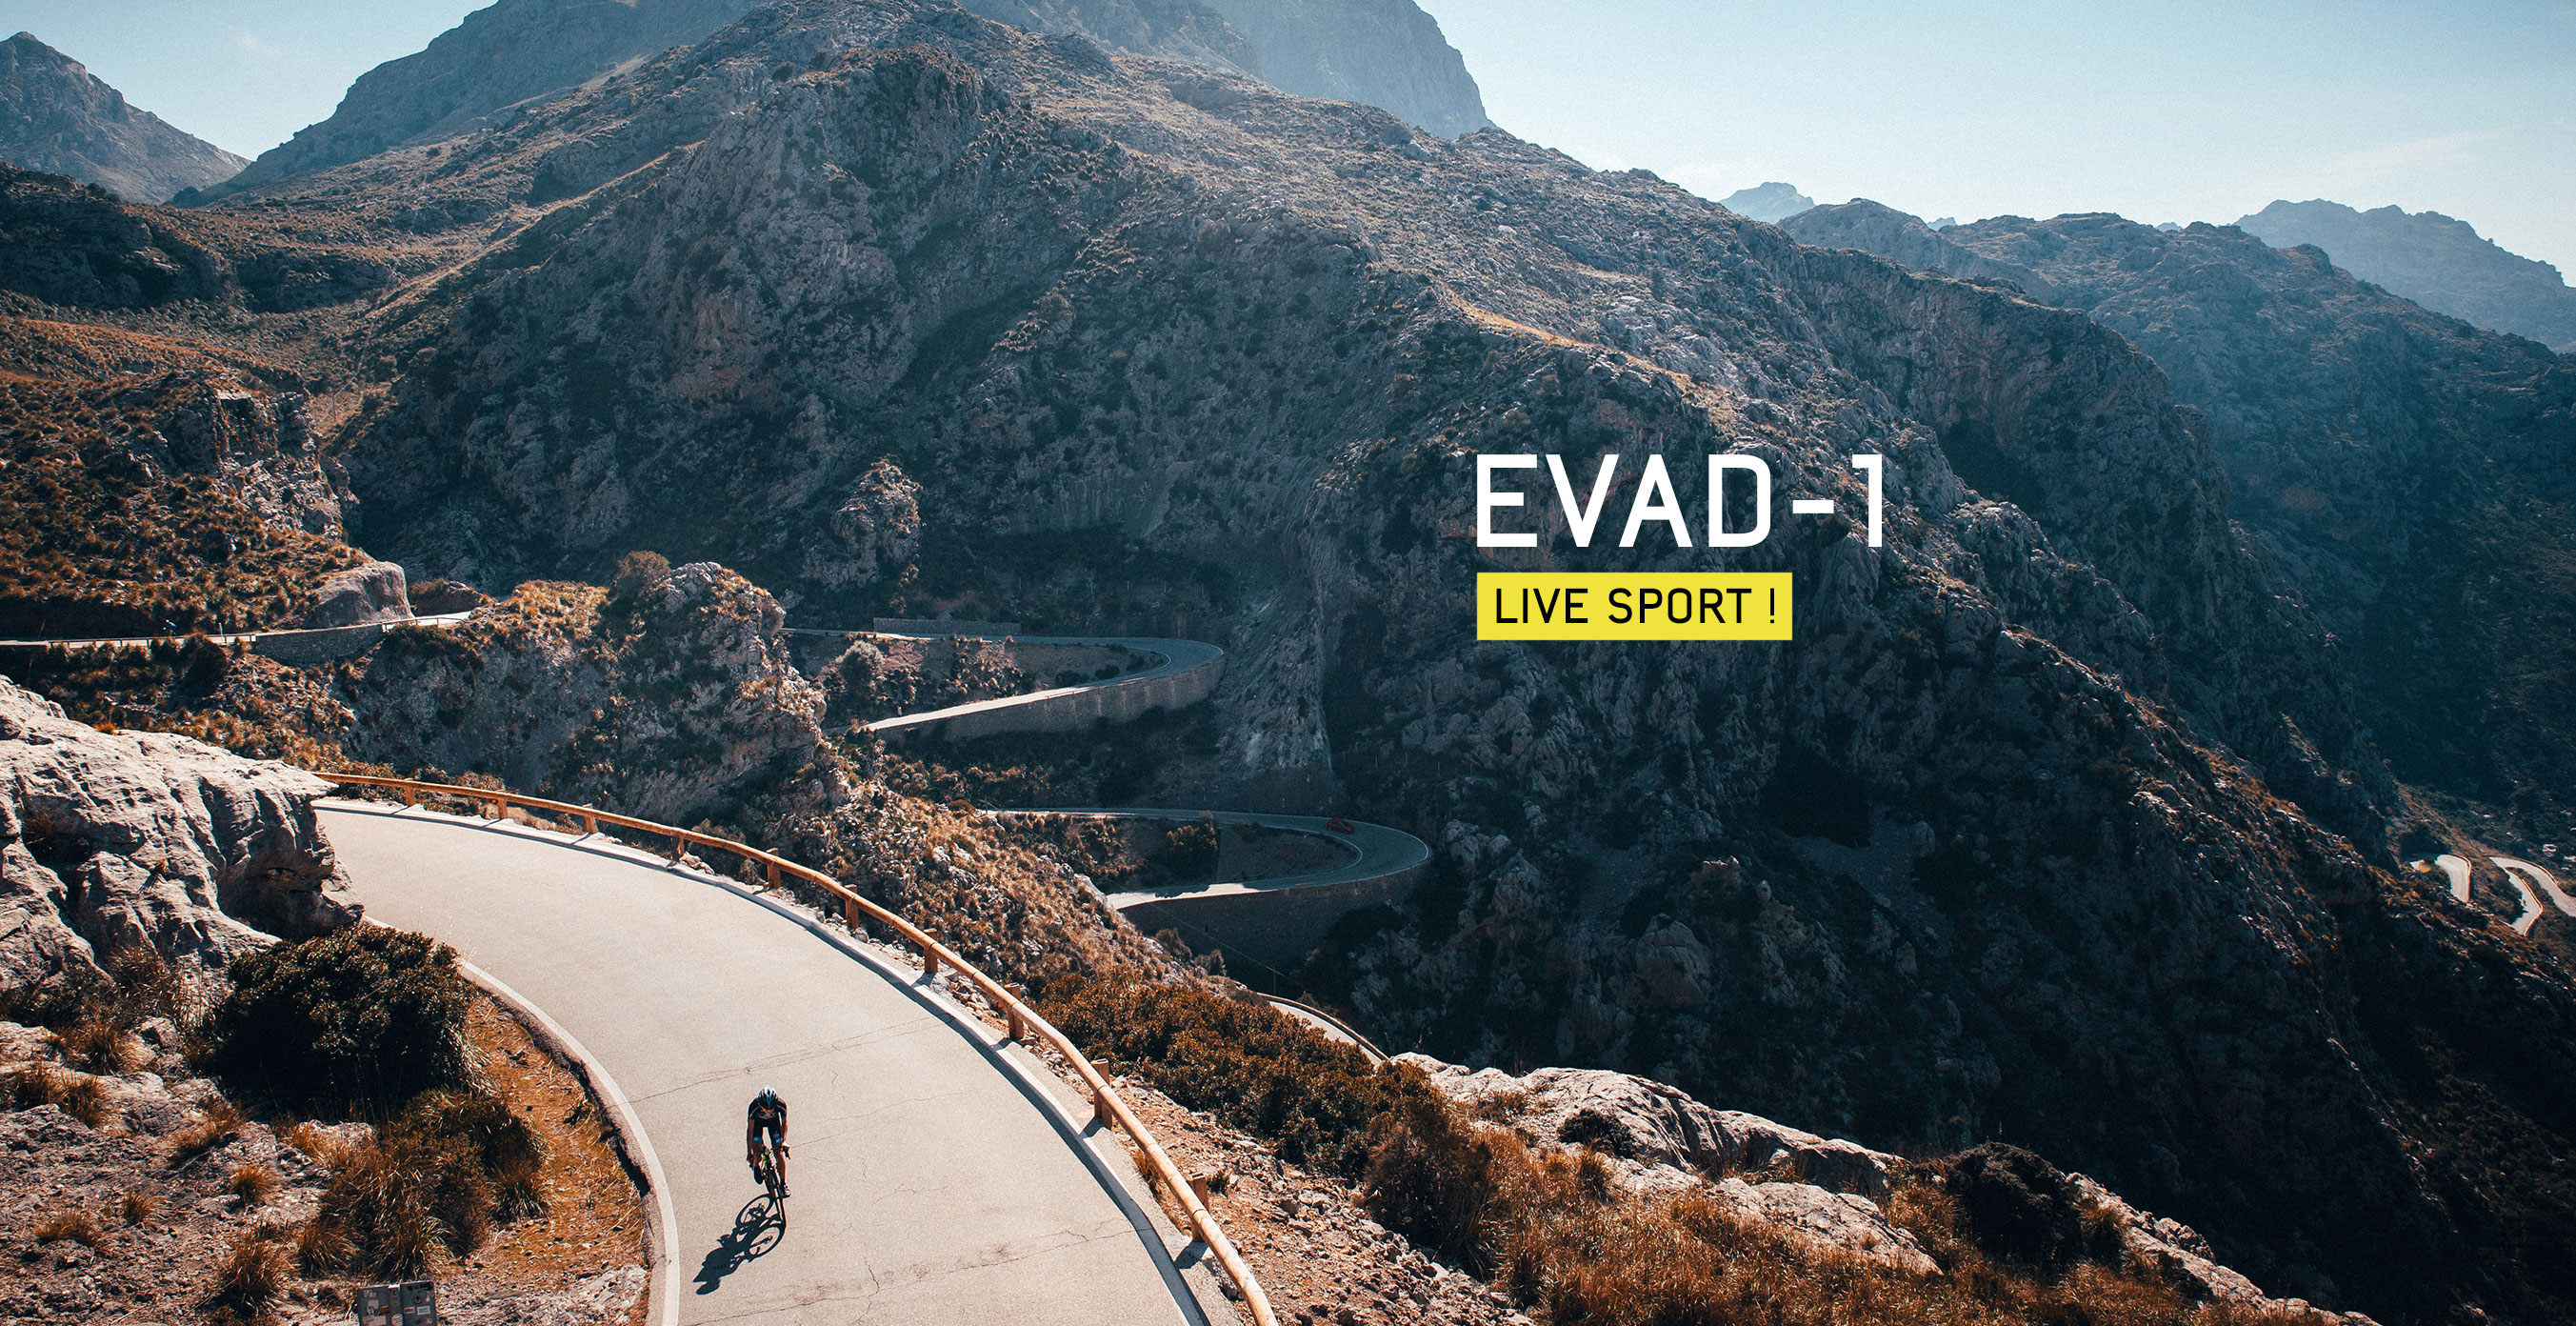 LIVE SPORT! avec les EVAD-1 de Julbo